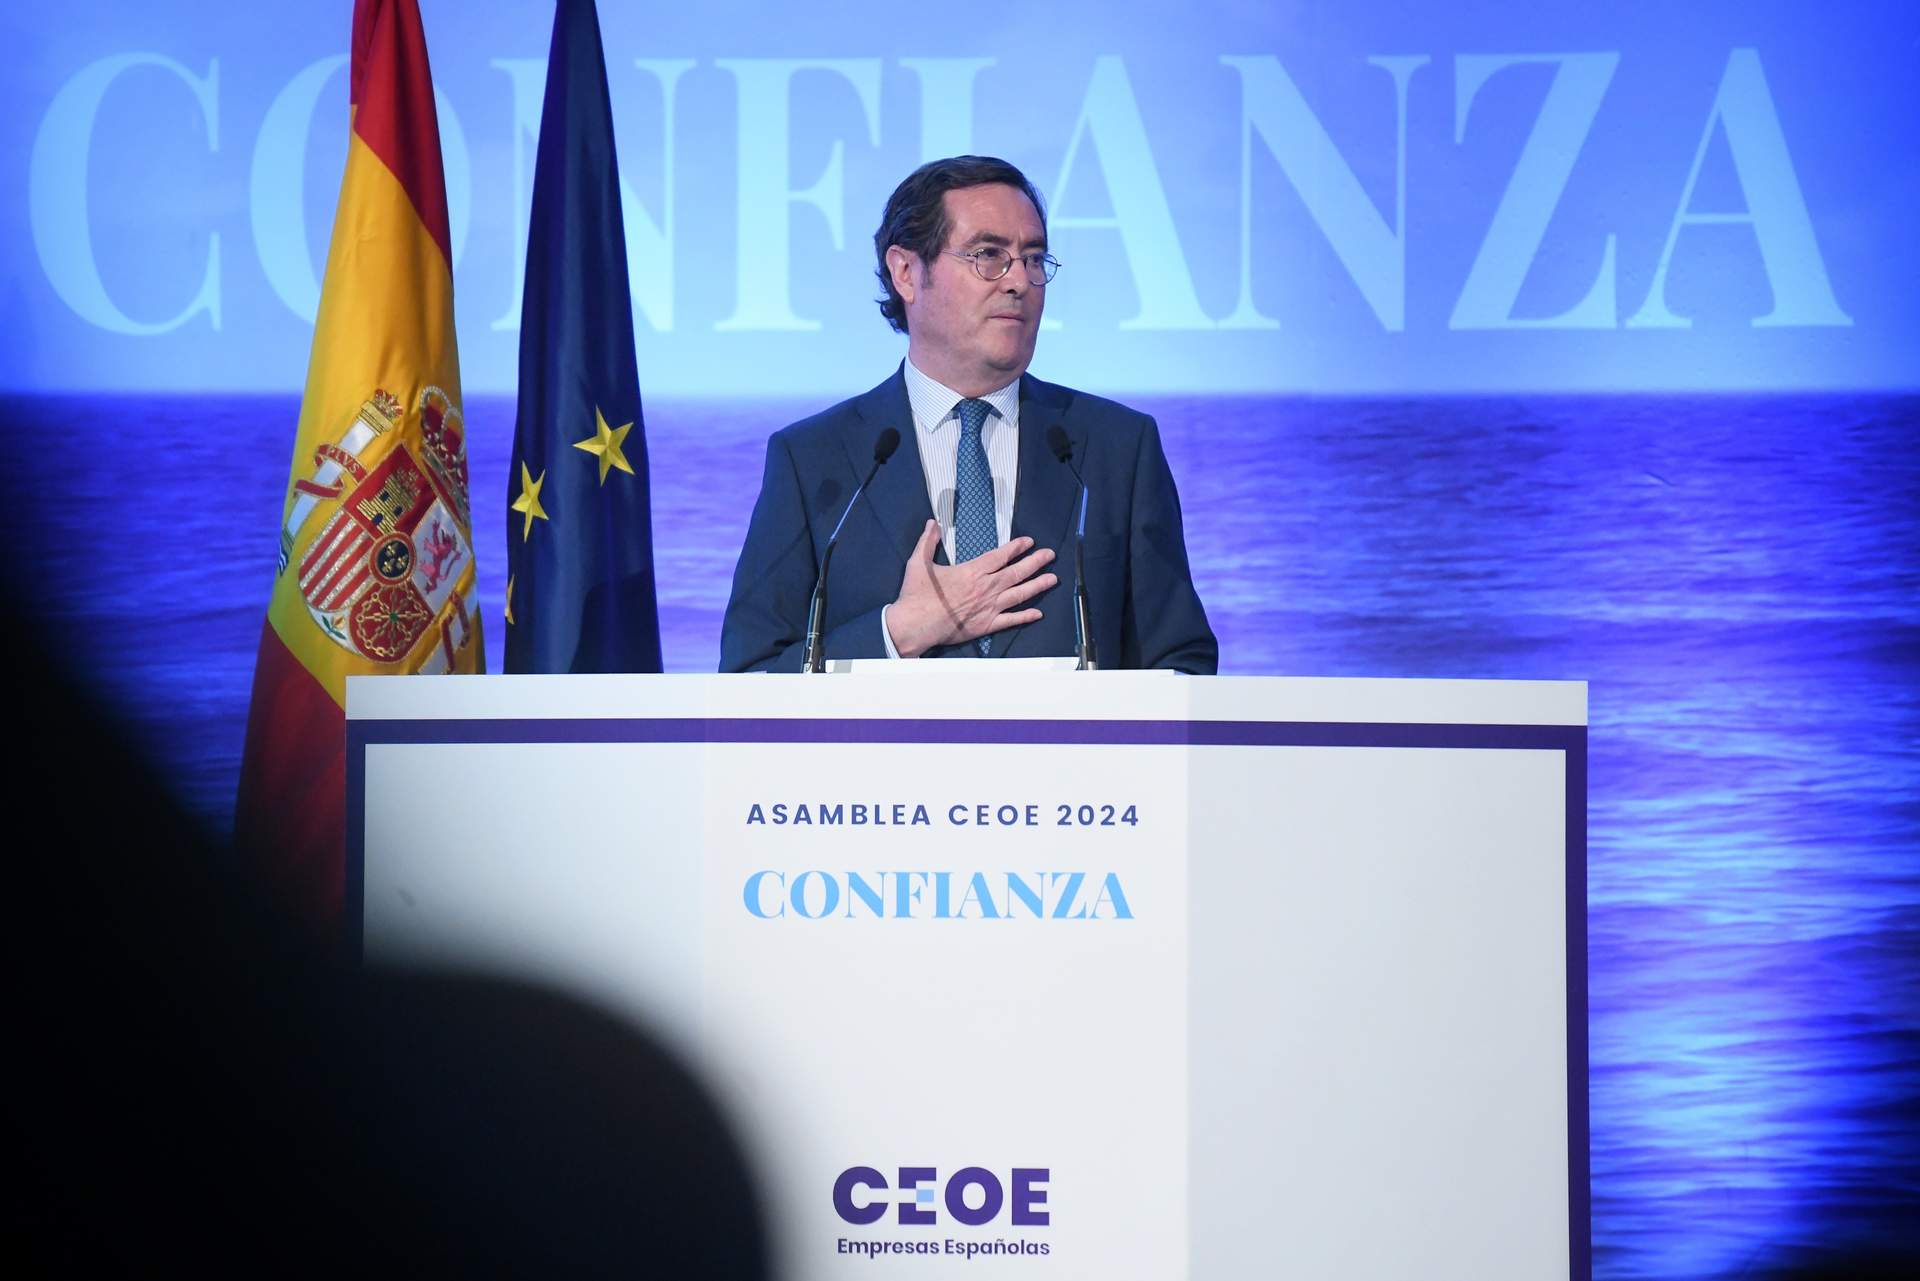 El presidente de la CEOE, Antonio Garamendi, interviene durante la Asamblea General de la CEOE, en el auditorio Mutua Madrileña, a 9 de julio de 2024, en Madrid.